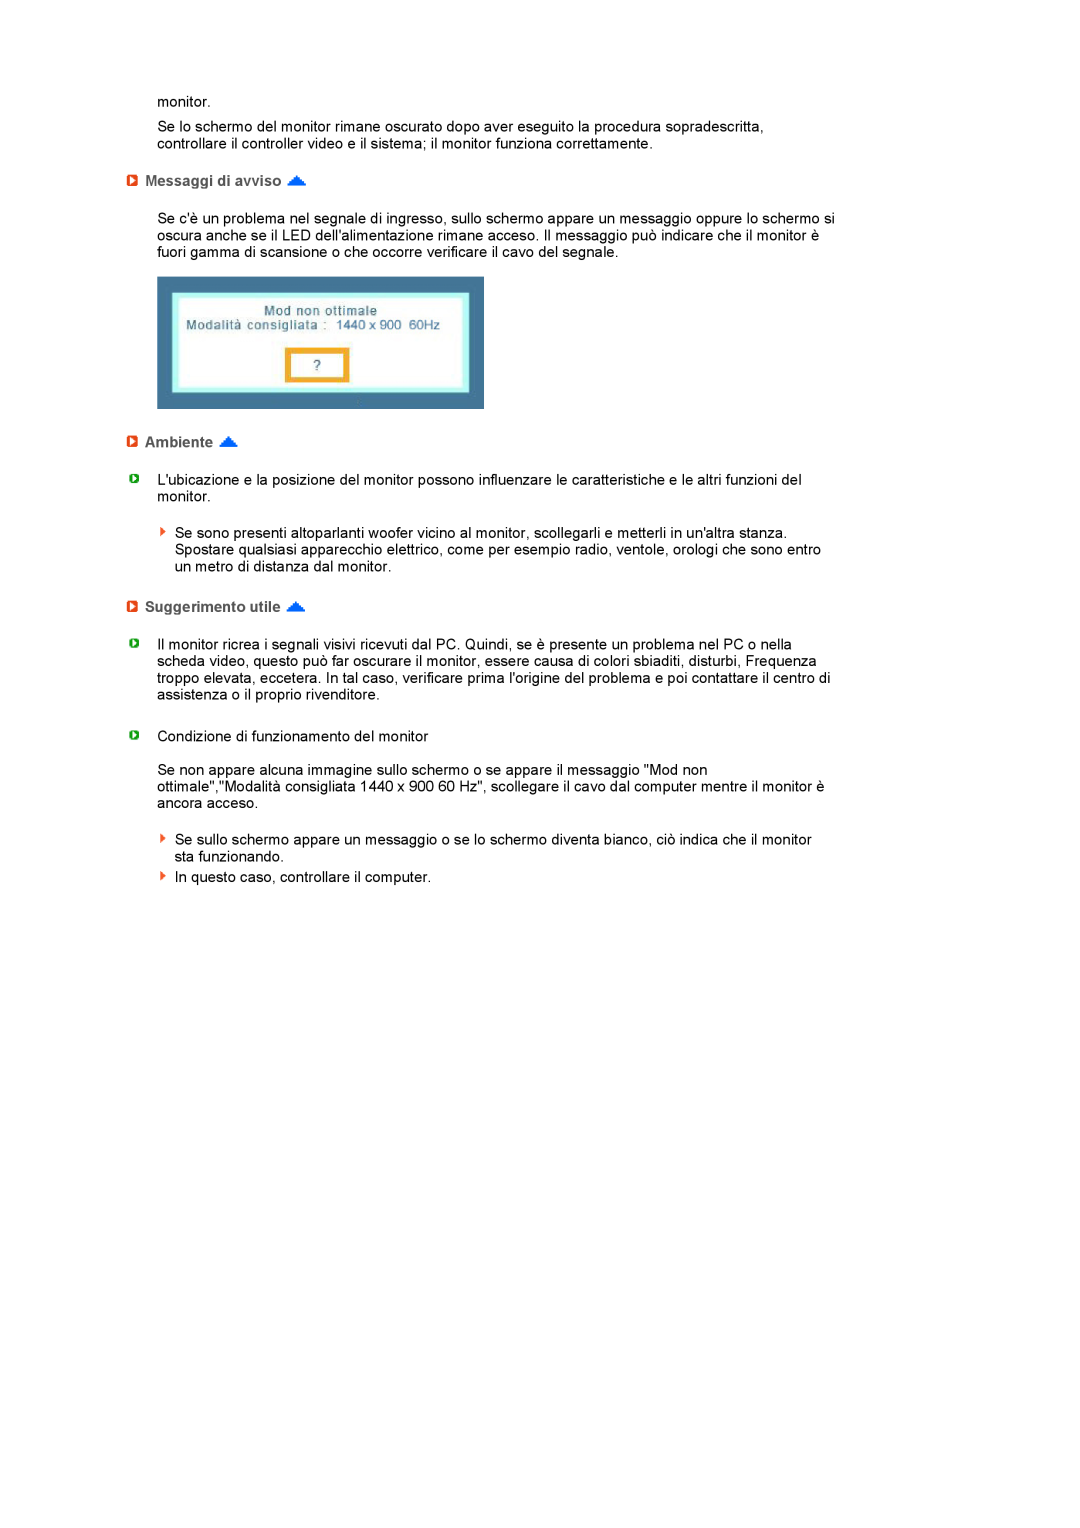 Samsung LS17PENSF/CLT manual Messaggi di avviso, Ambiente, Suggerimento utile 